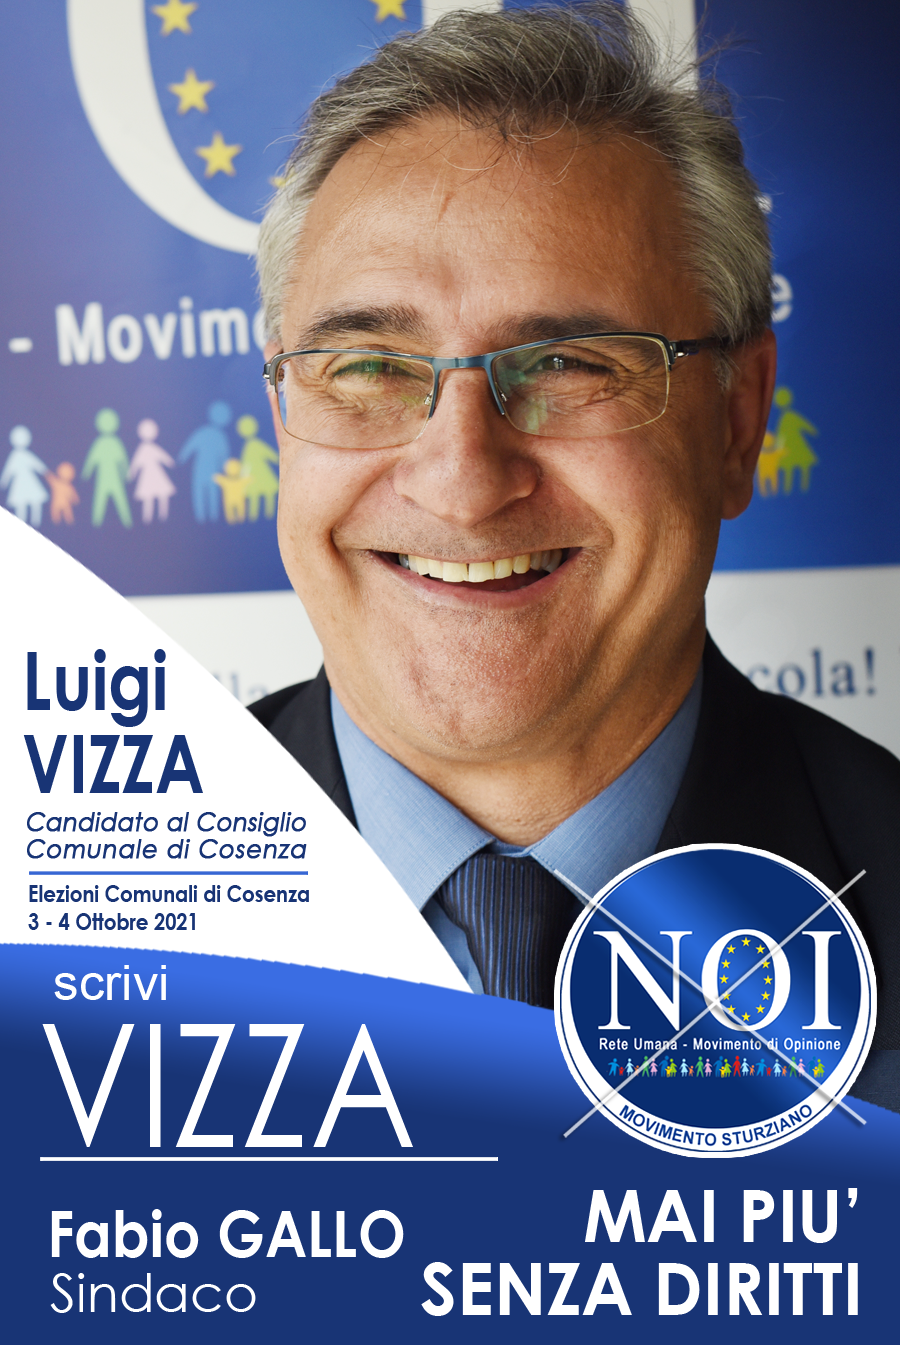 Luigi Vizza